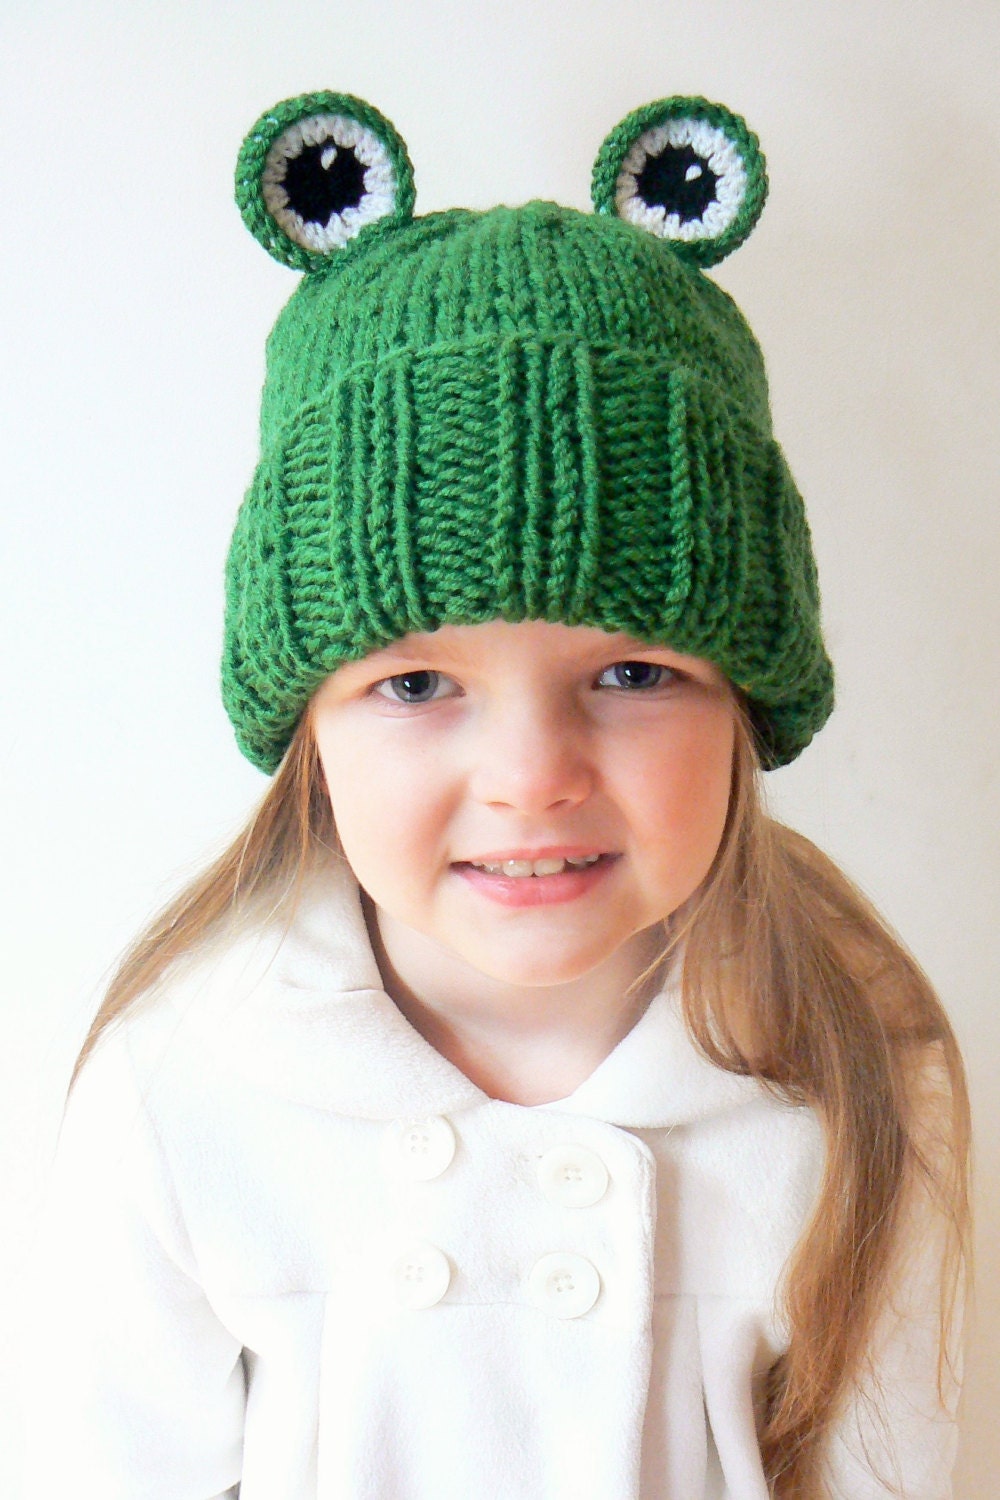 Frog Pom Pom Knit Beanie Hat